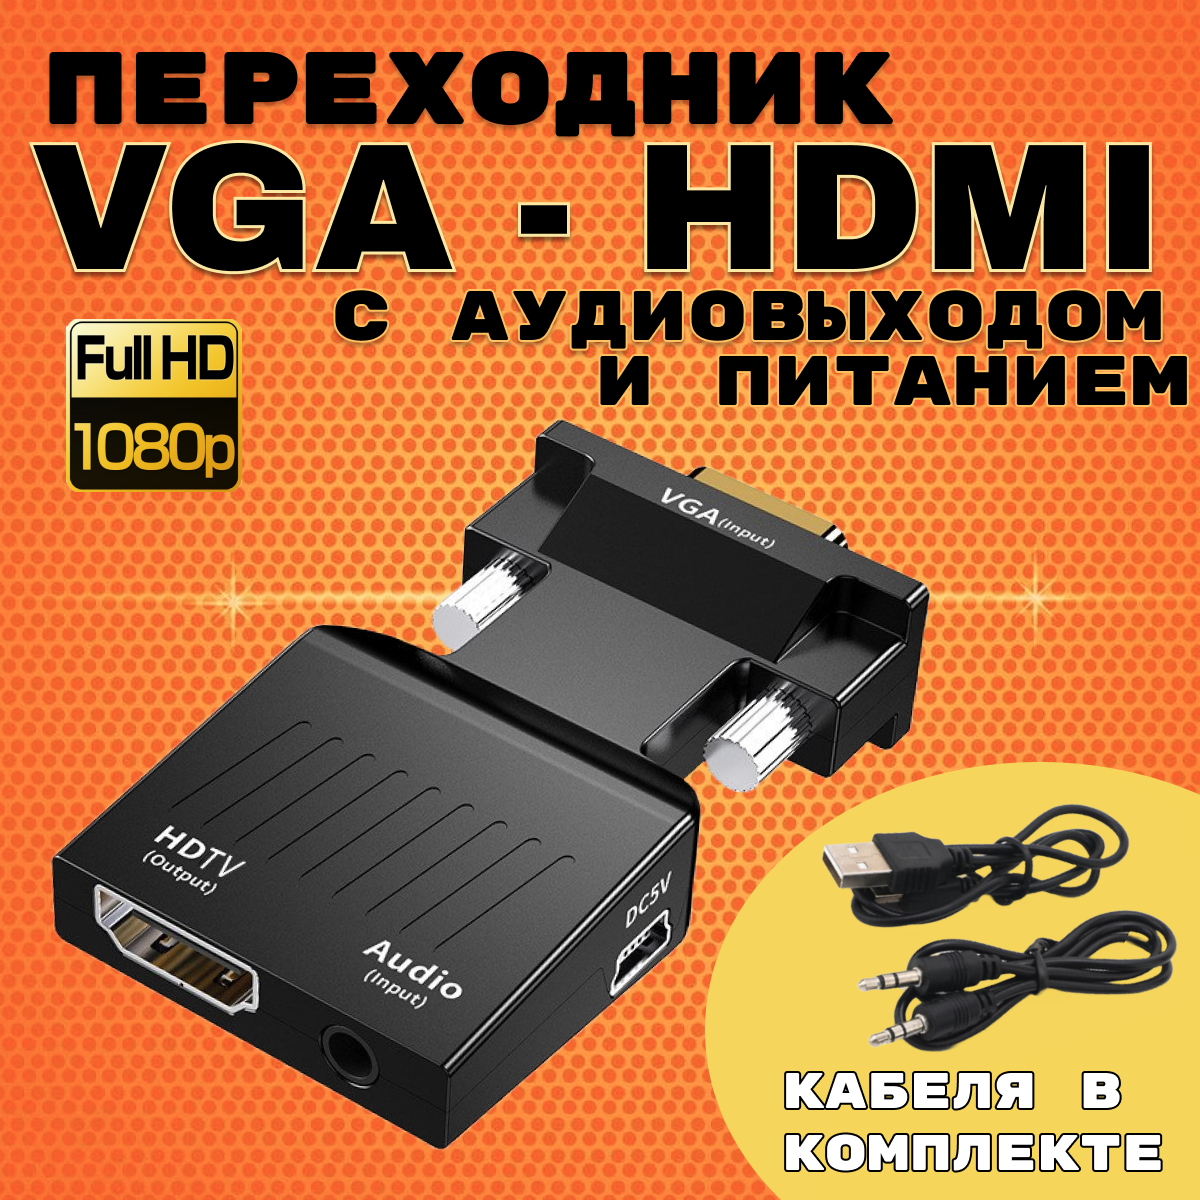 Портативный адаптер переходник конвертер HDMI - VGA в одну сторону